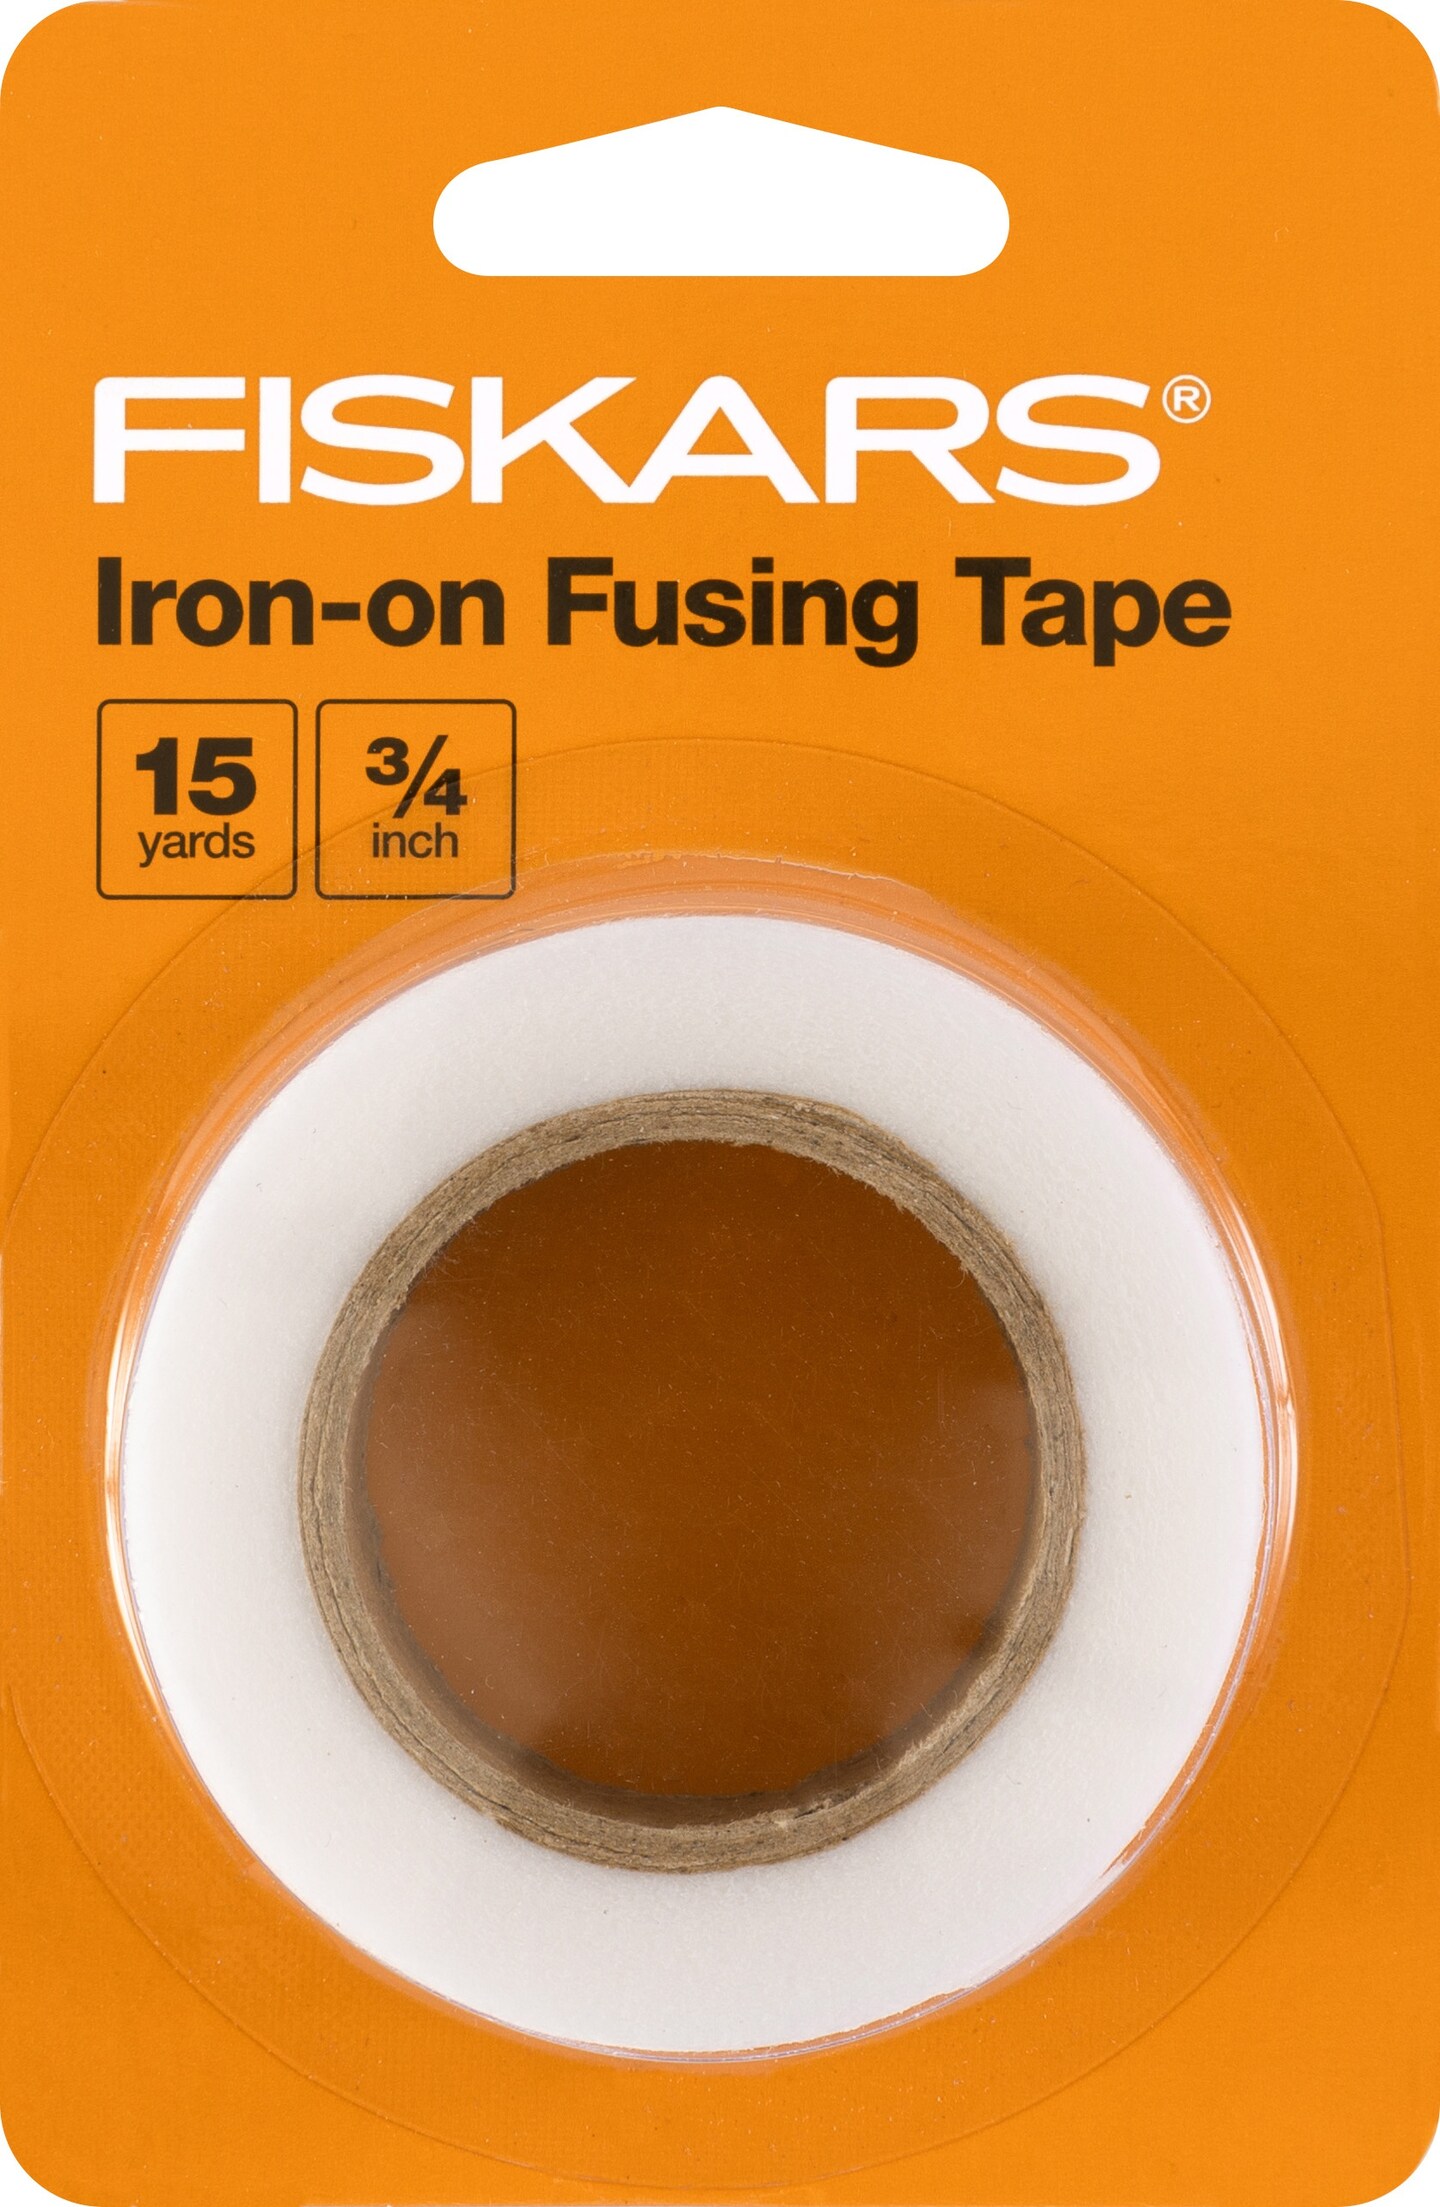 Fiskars Iron on Fusing Tape 15yds